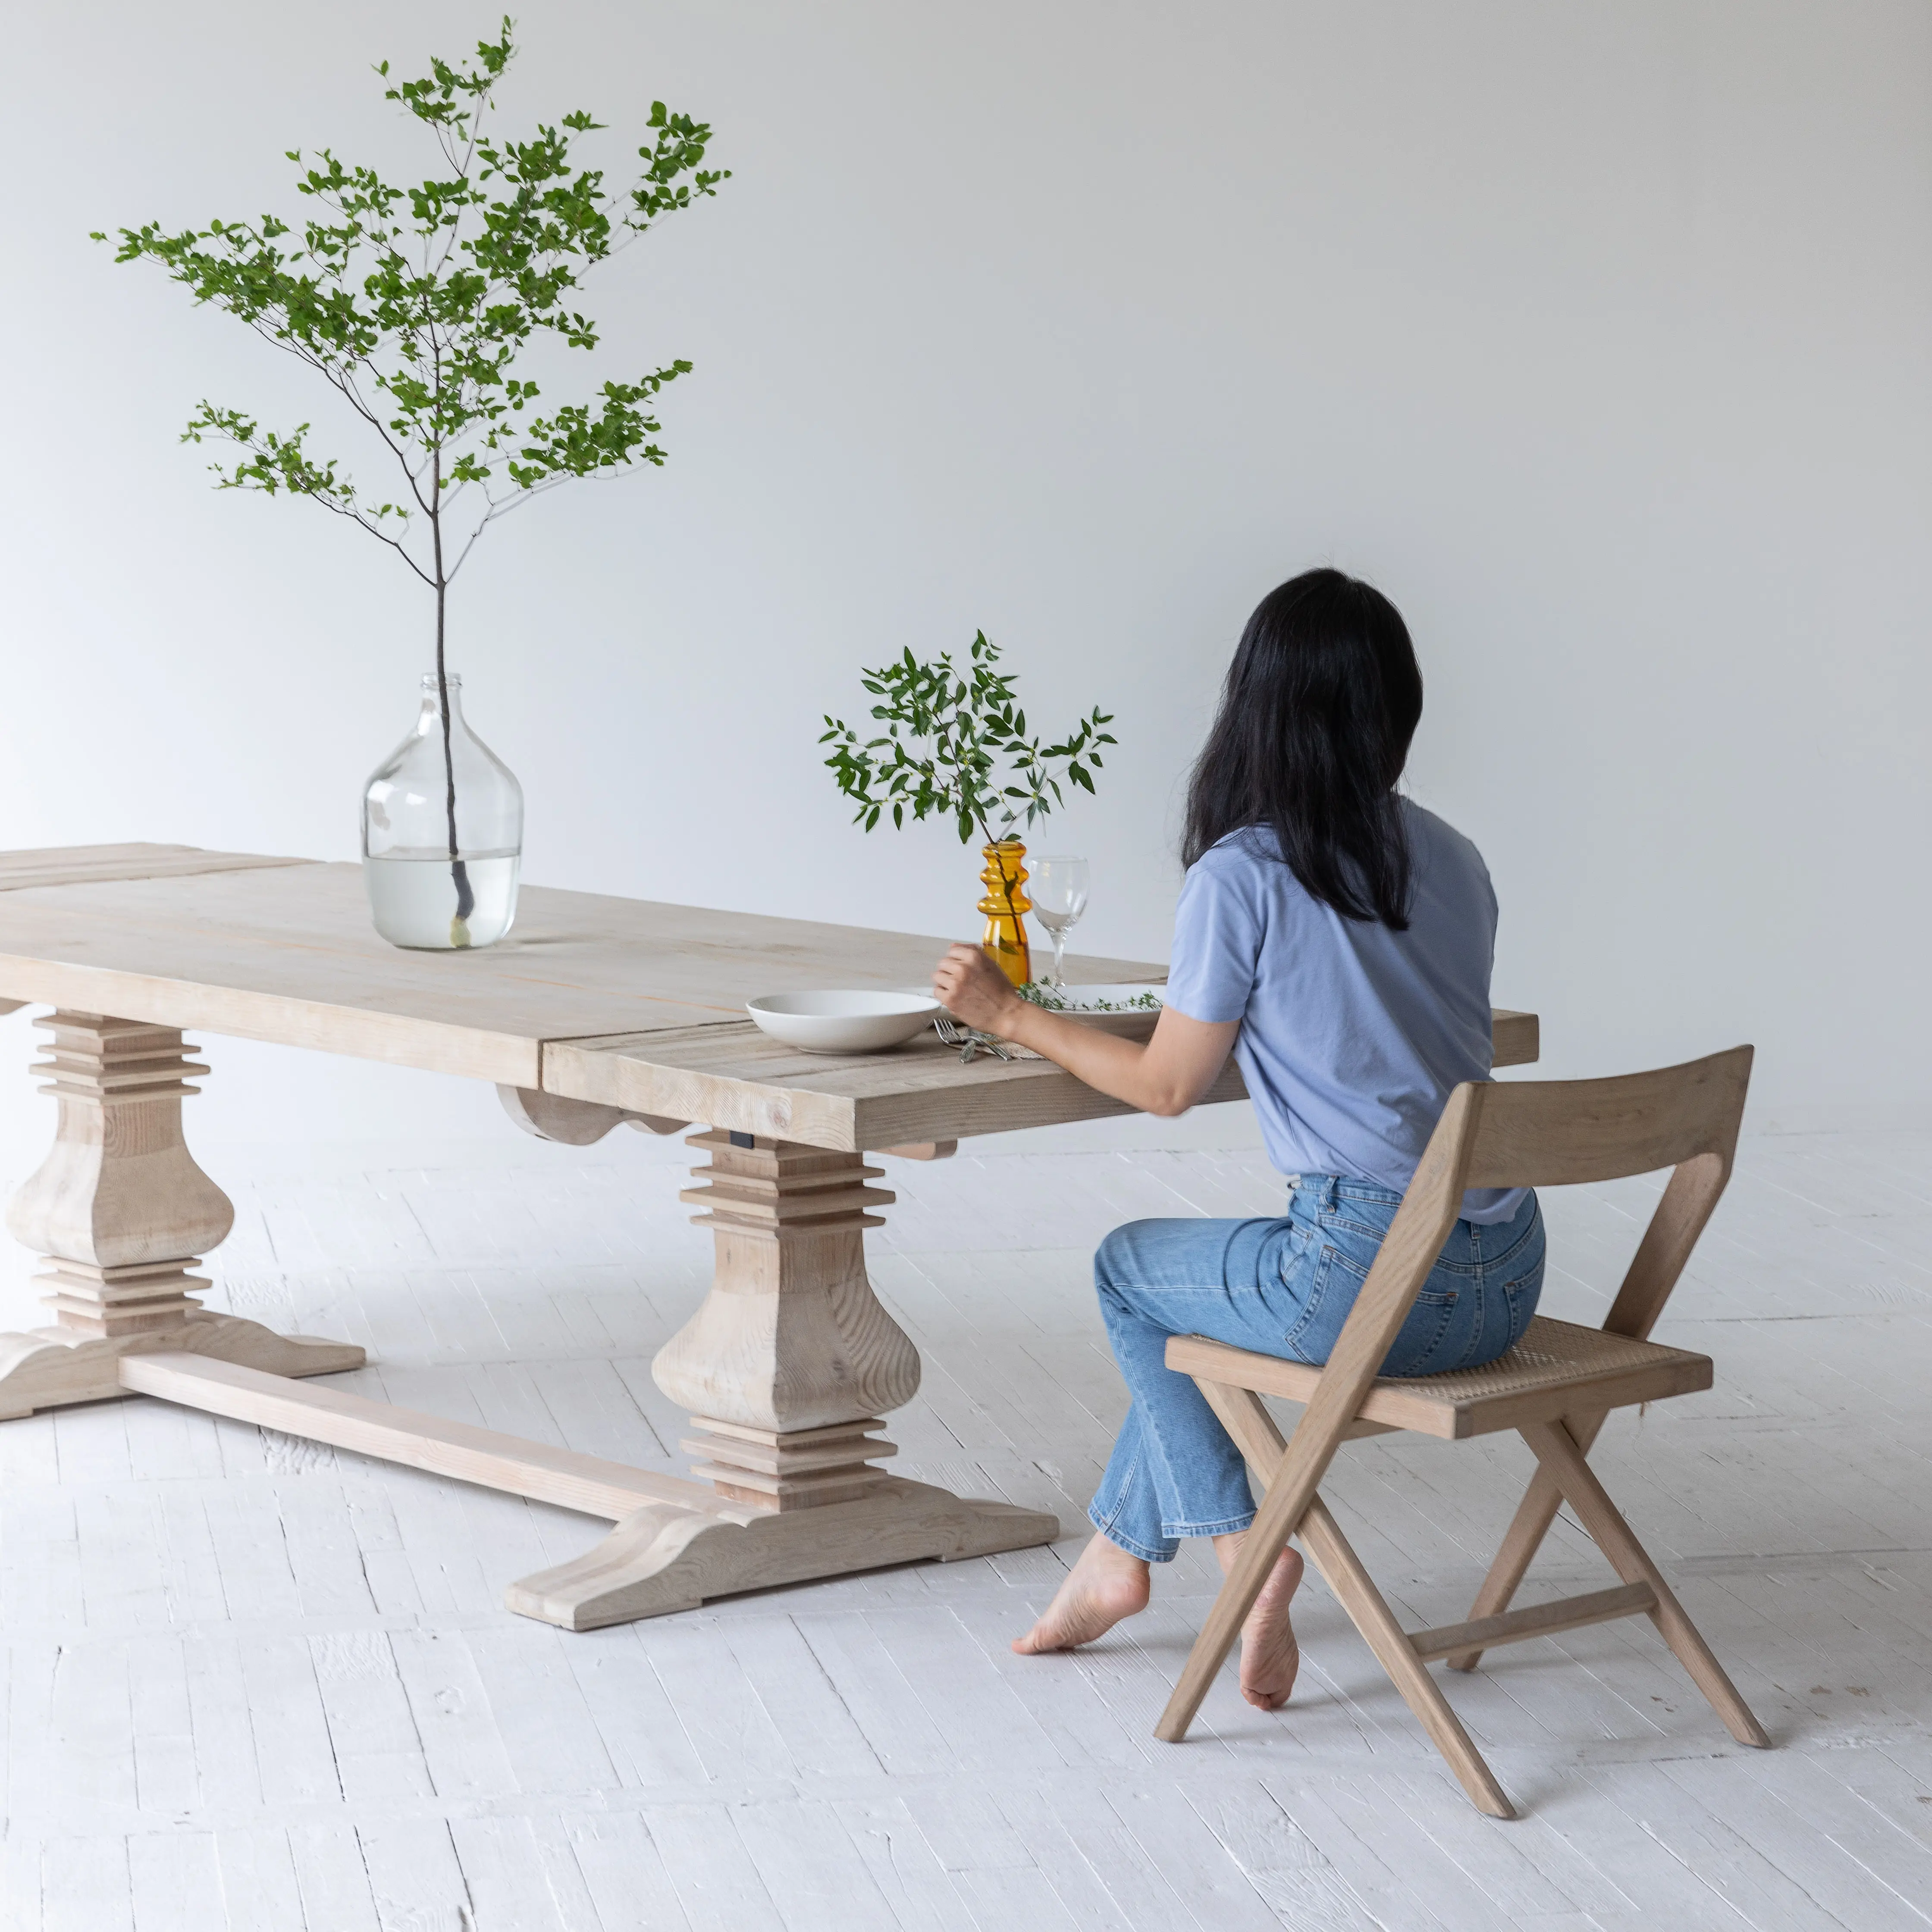 Mobili francesi tavolo da pranzo industriale rustico riciclato per eventi estensibile tavolo da pranzo in legno rustico naturale mesa grande